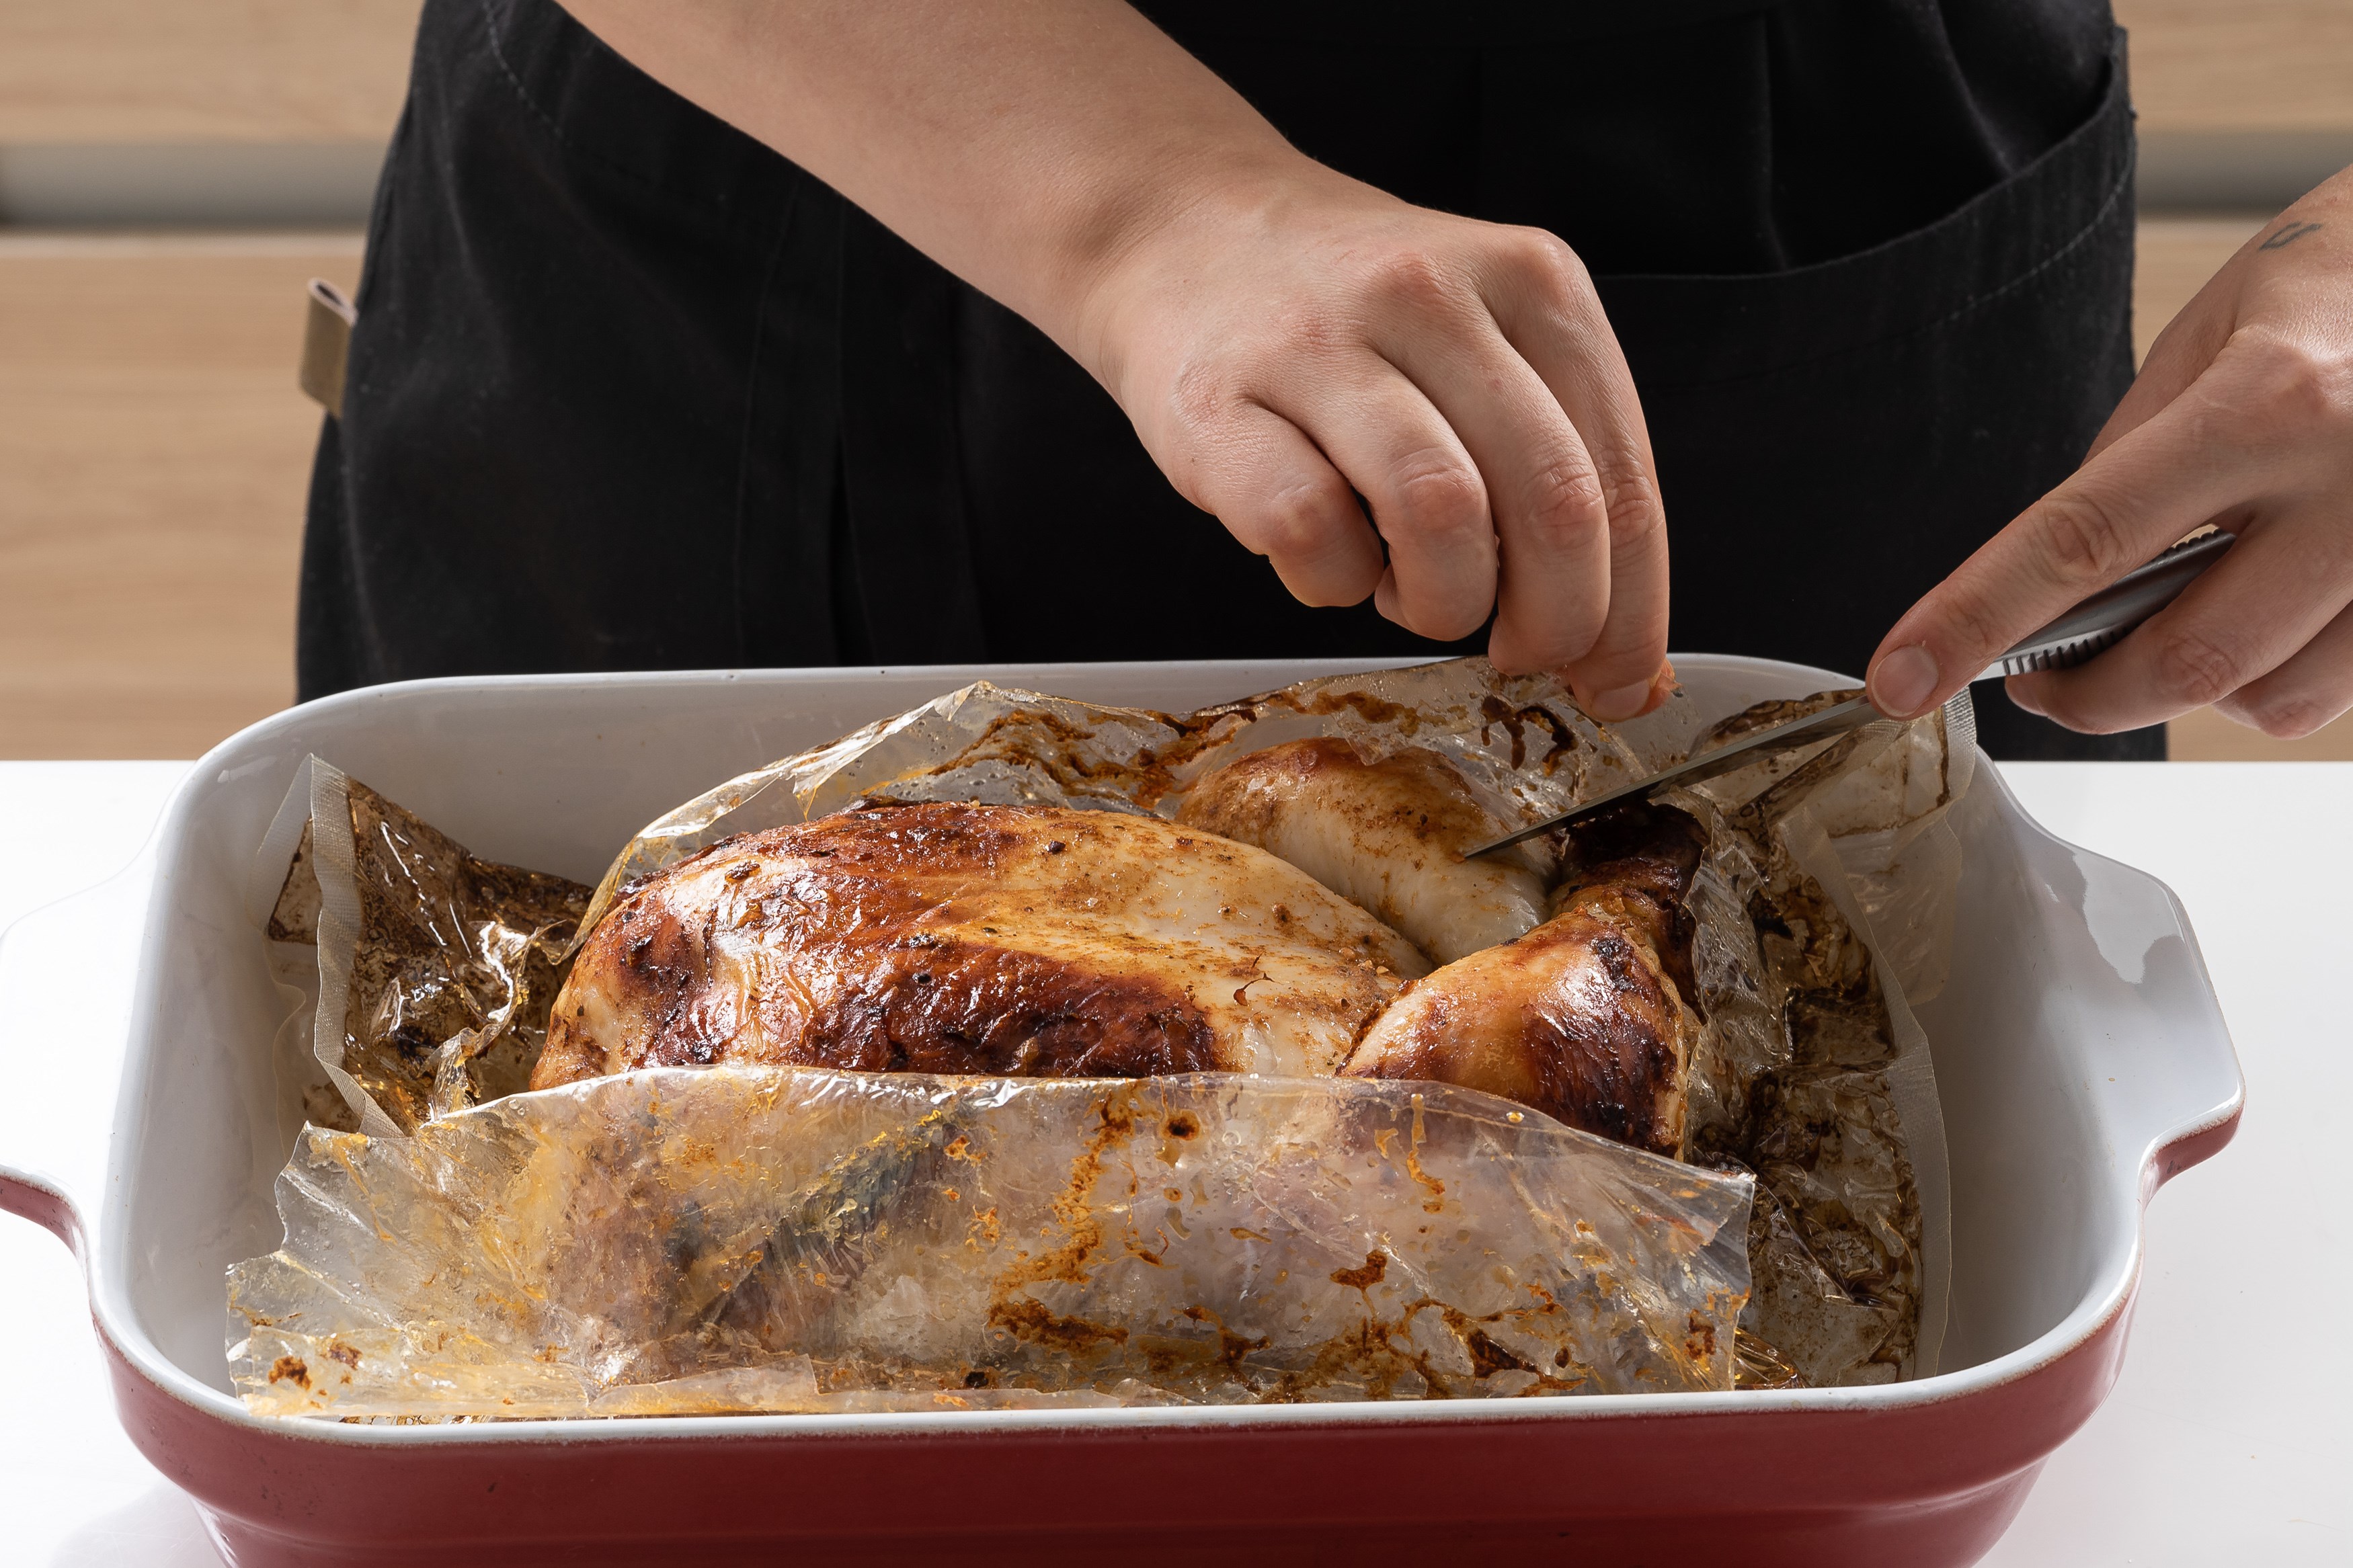 Курица с чесноком и картошкой в духовке - классический рецепт с фото